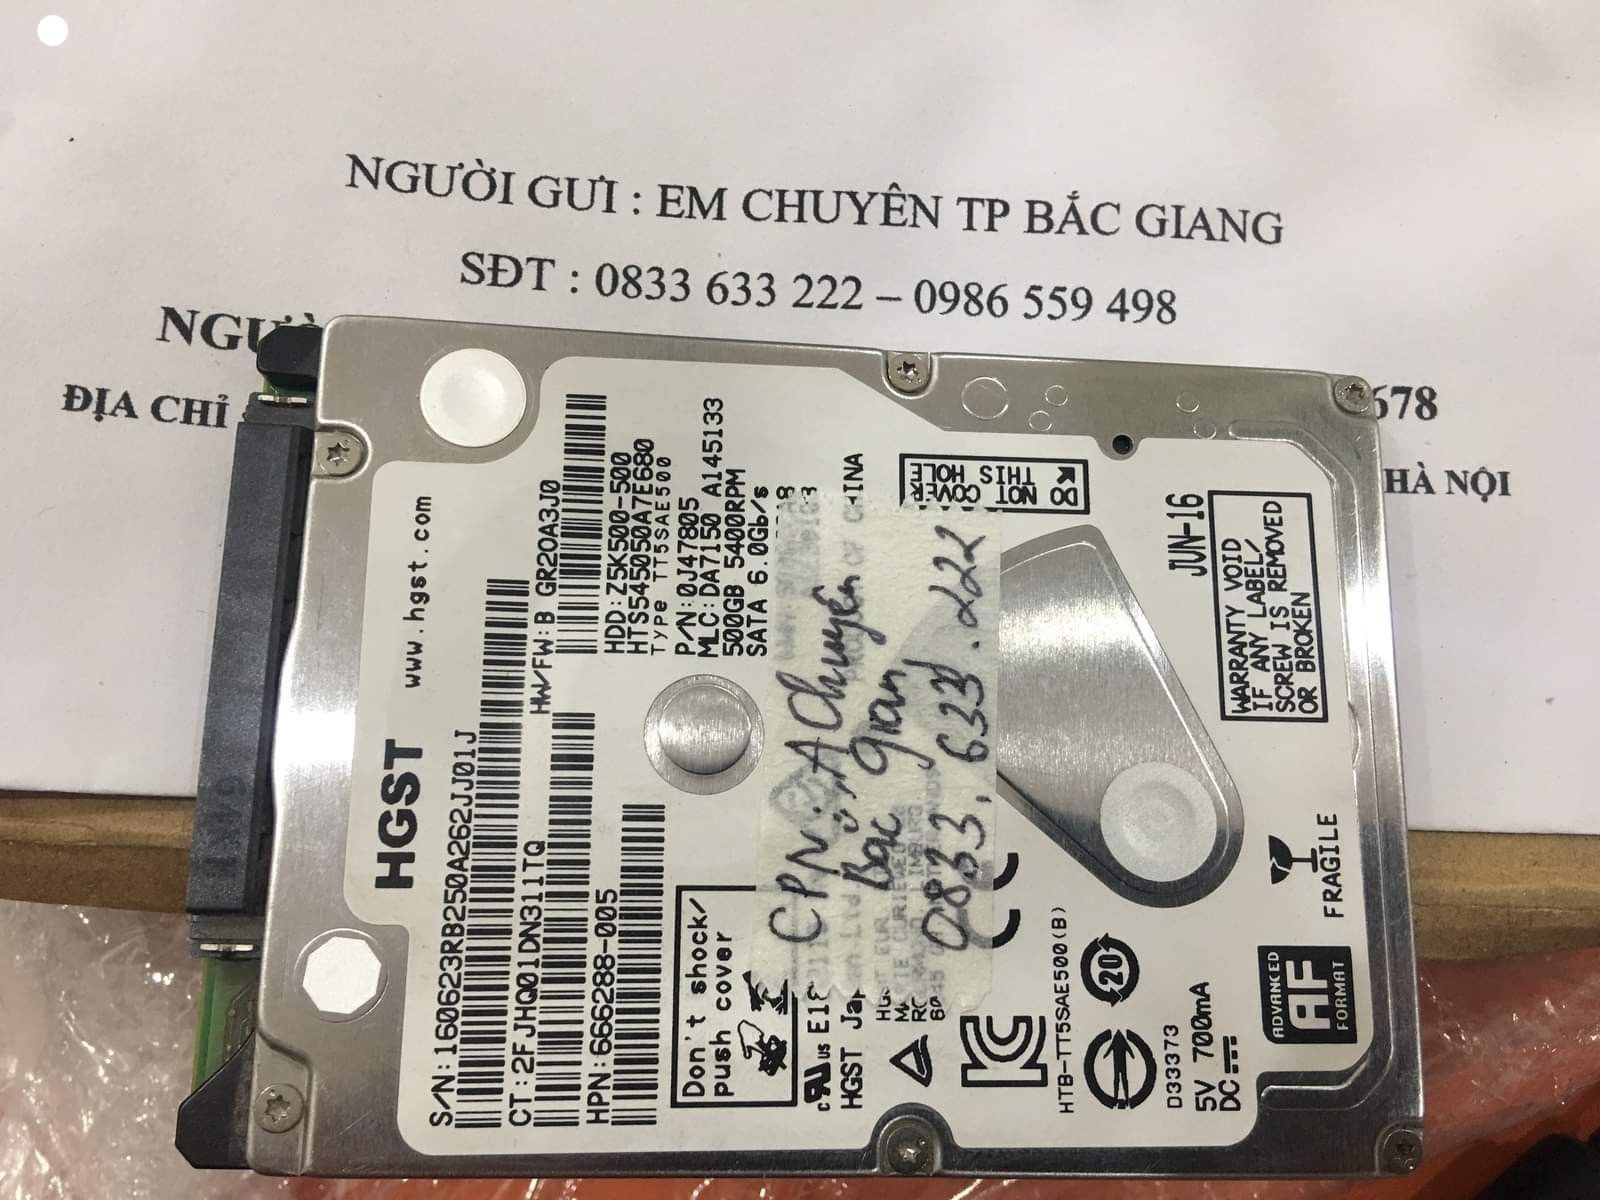 Phục hồi dữ liệu ổ cứng HGST 500GB không nhận tại Bắc Giang - 18/12/2020 - cuumaytinh